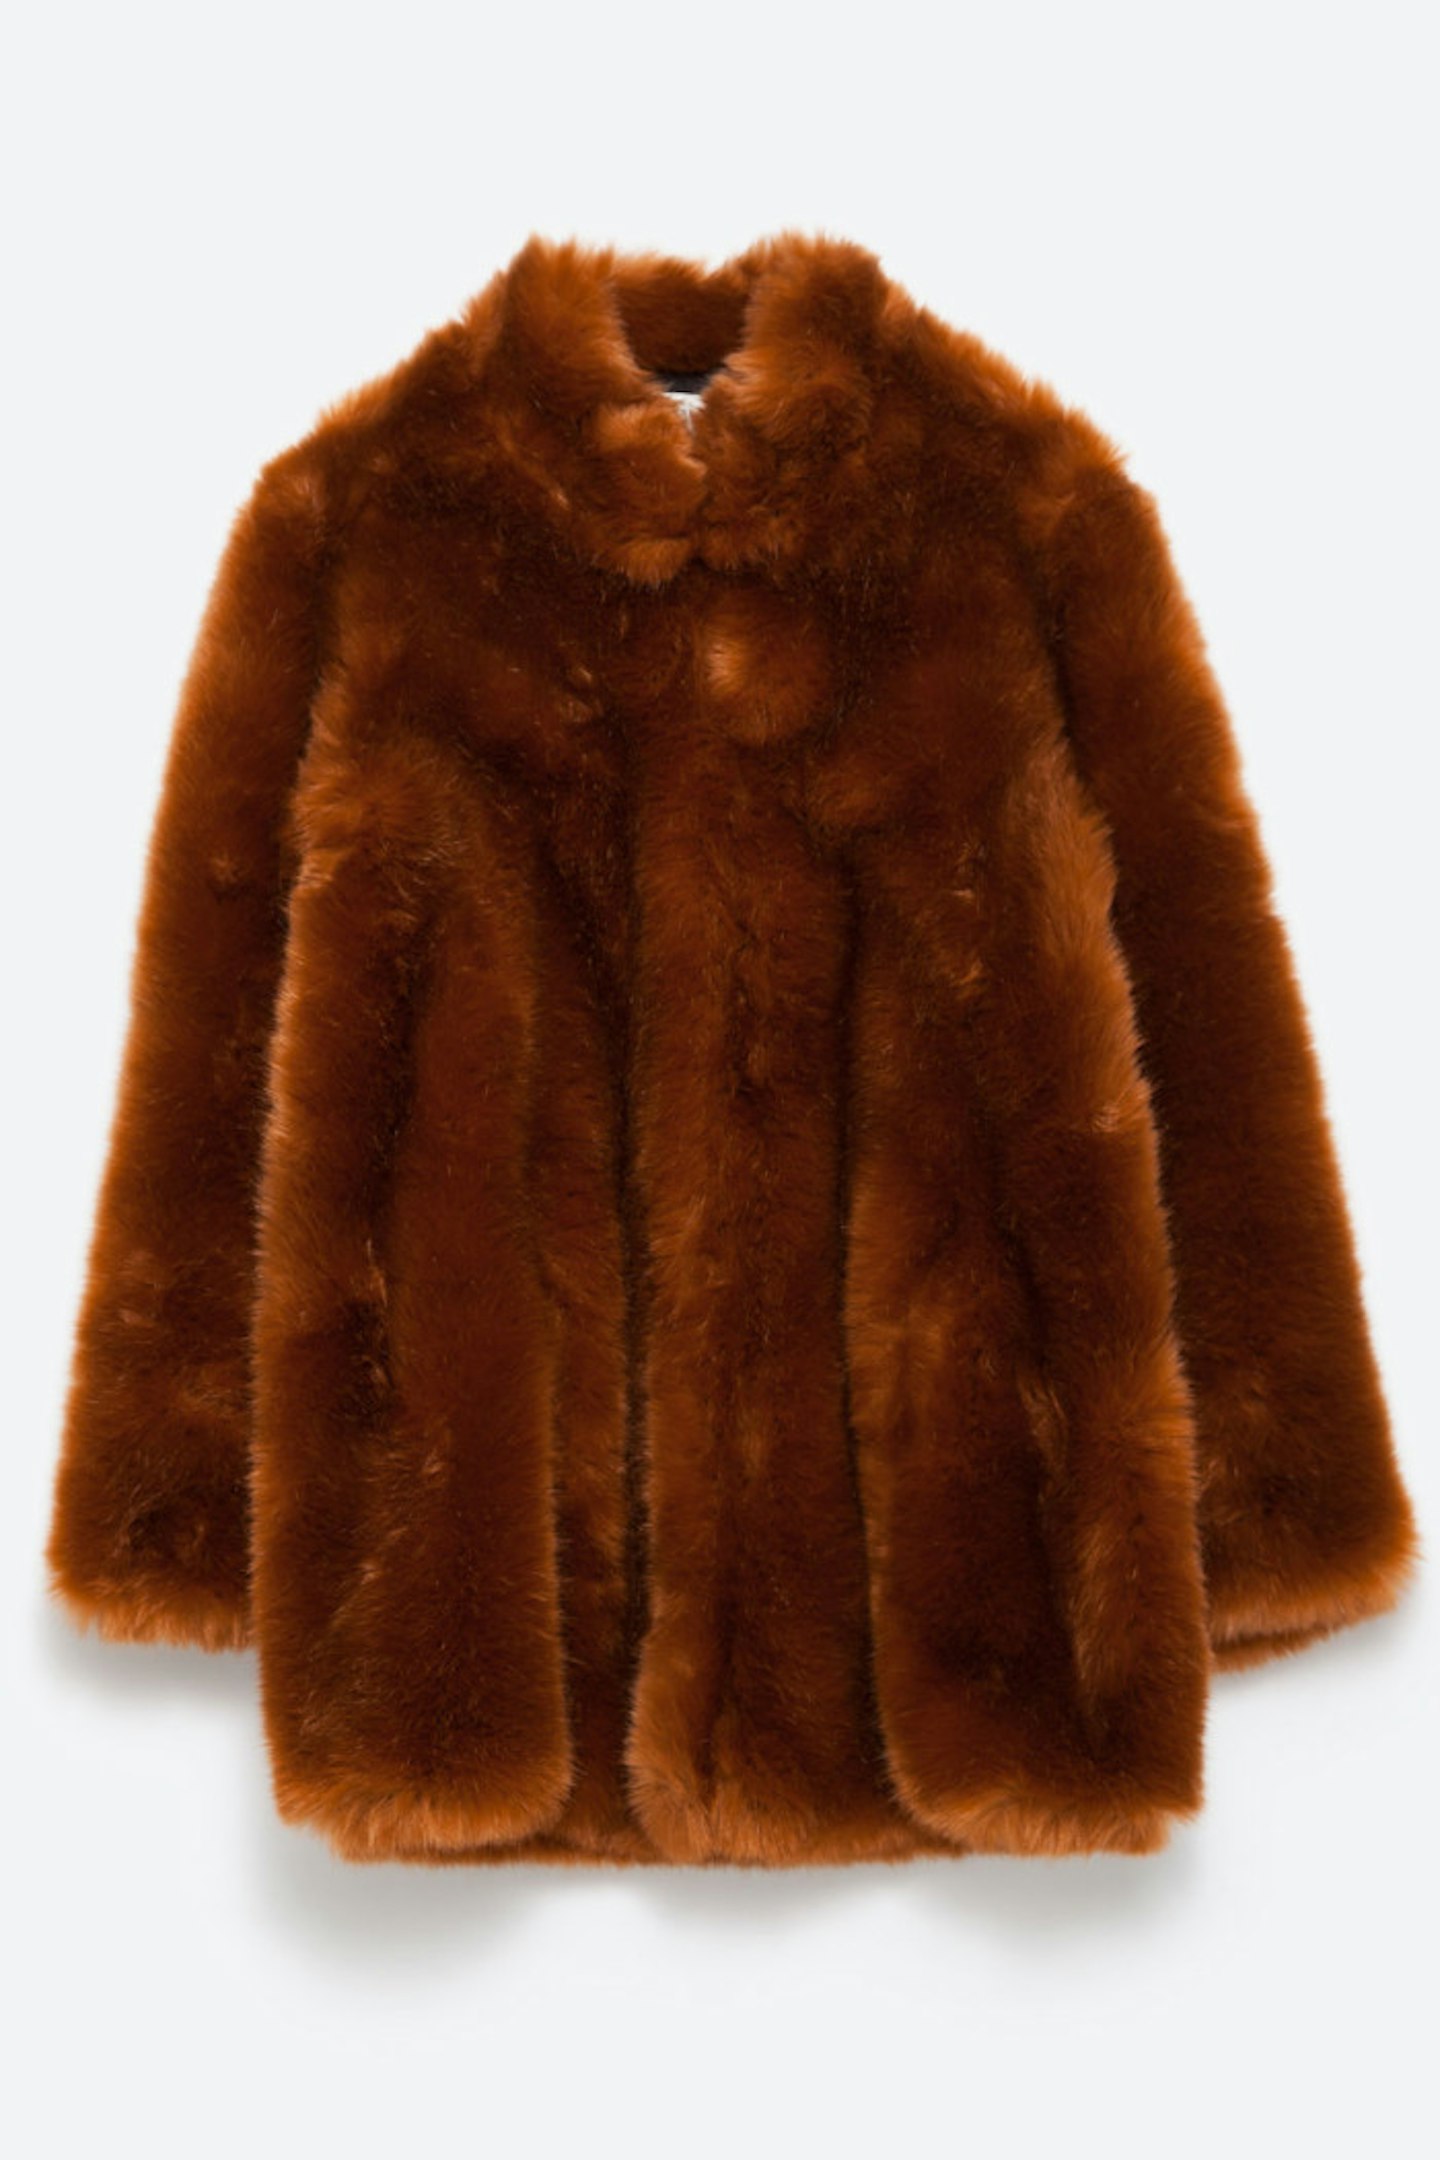 Zara Faux Fur Coat in Burnt Orange